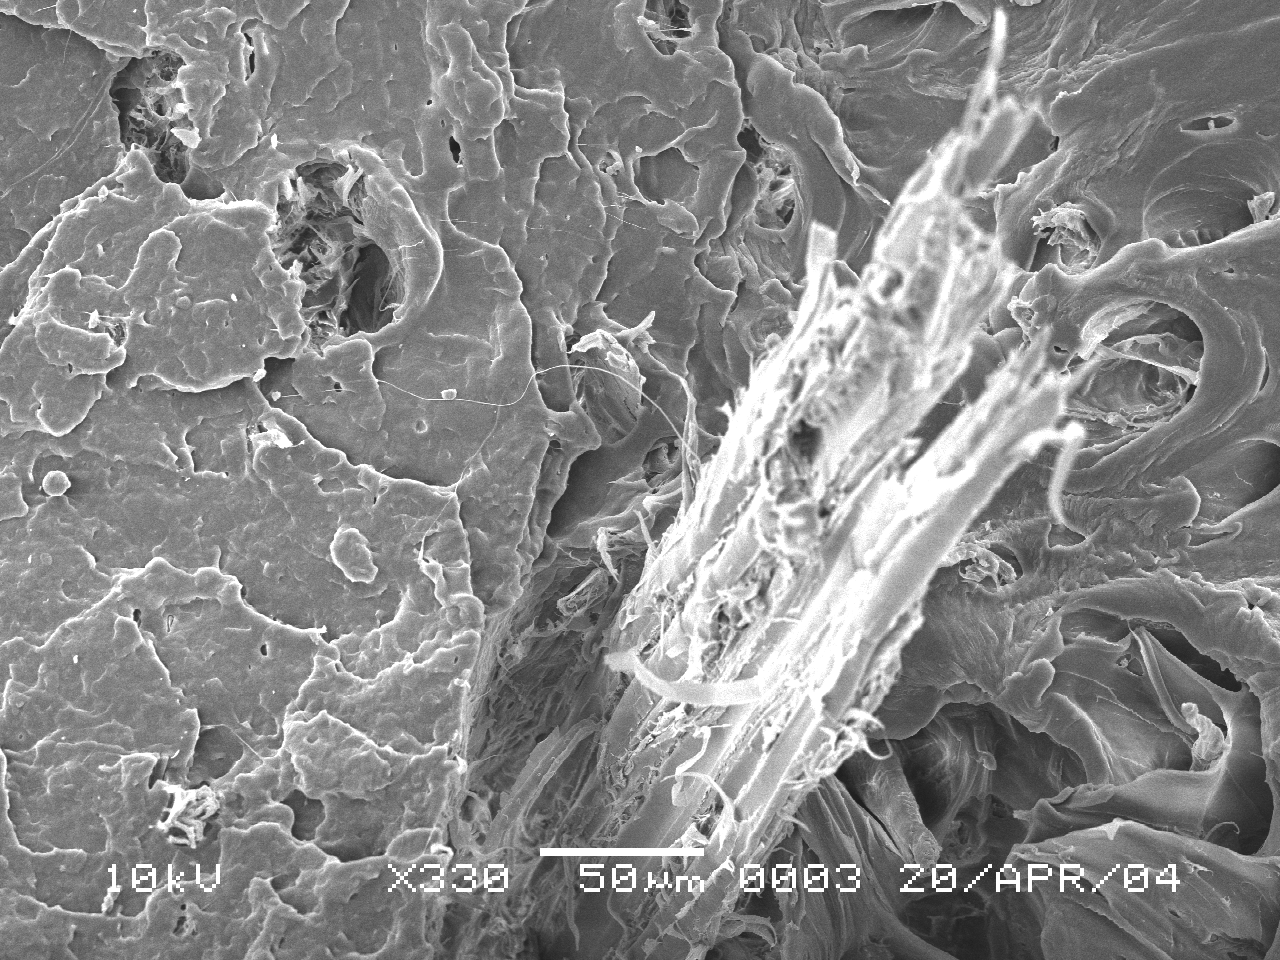 A FIGURA 30 mostra micrografias obtidas na MEV (Microscopia Eletrônica de Varredura) de amostras fraturadas no ensaio de tração.